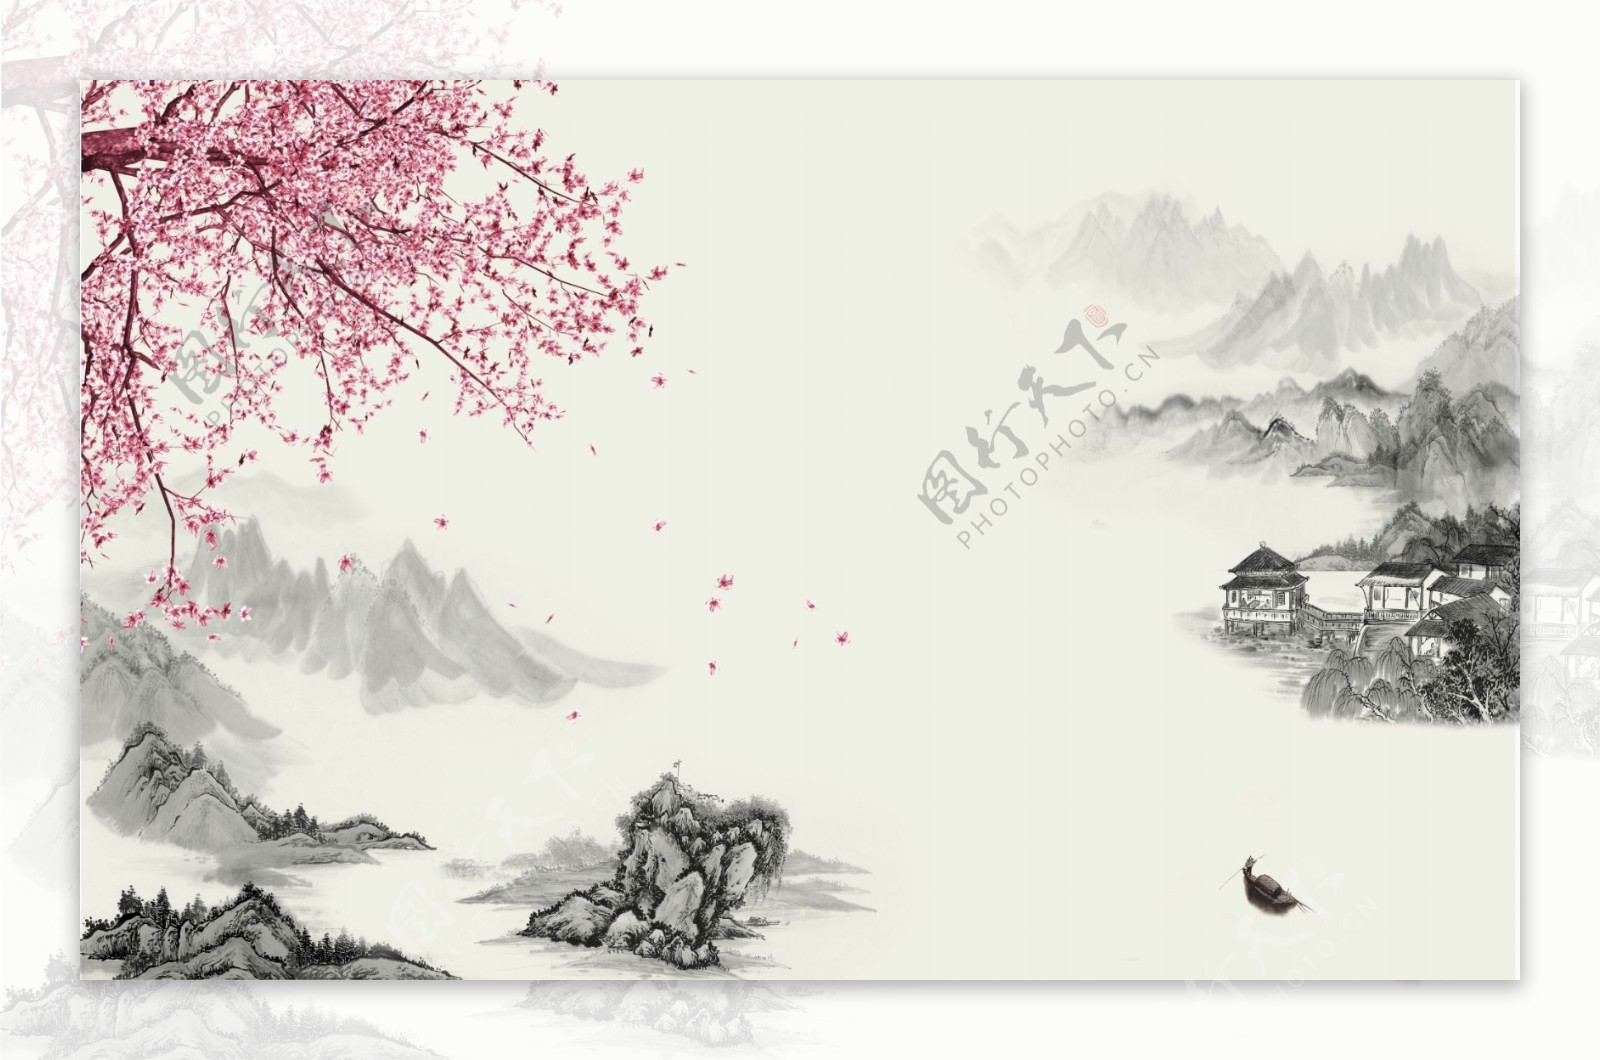 中式山水花鸟背景墙